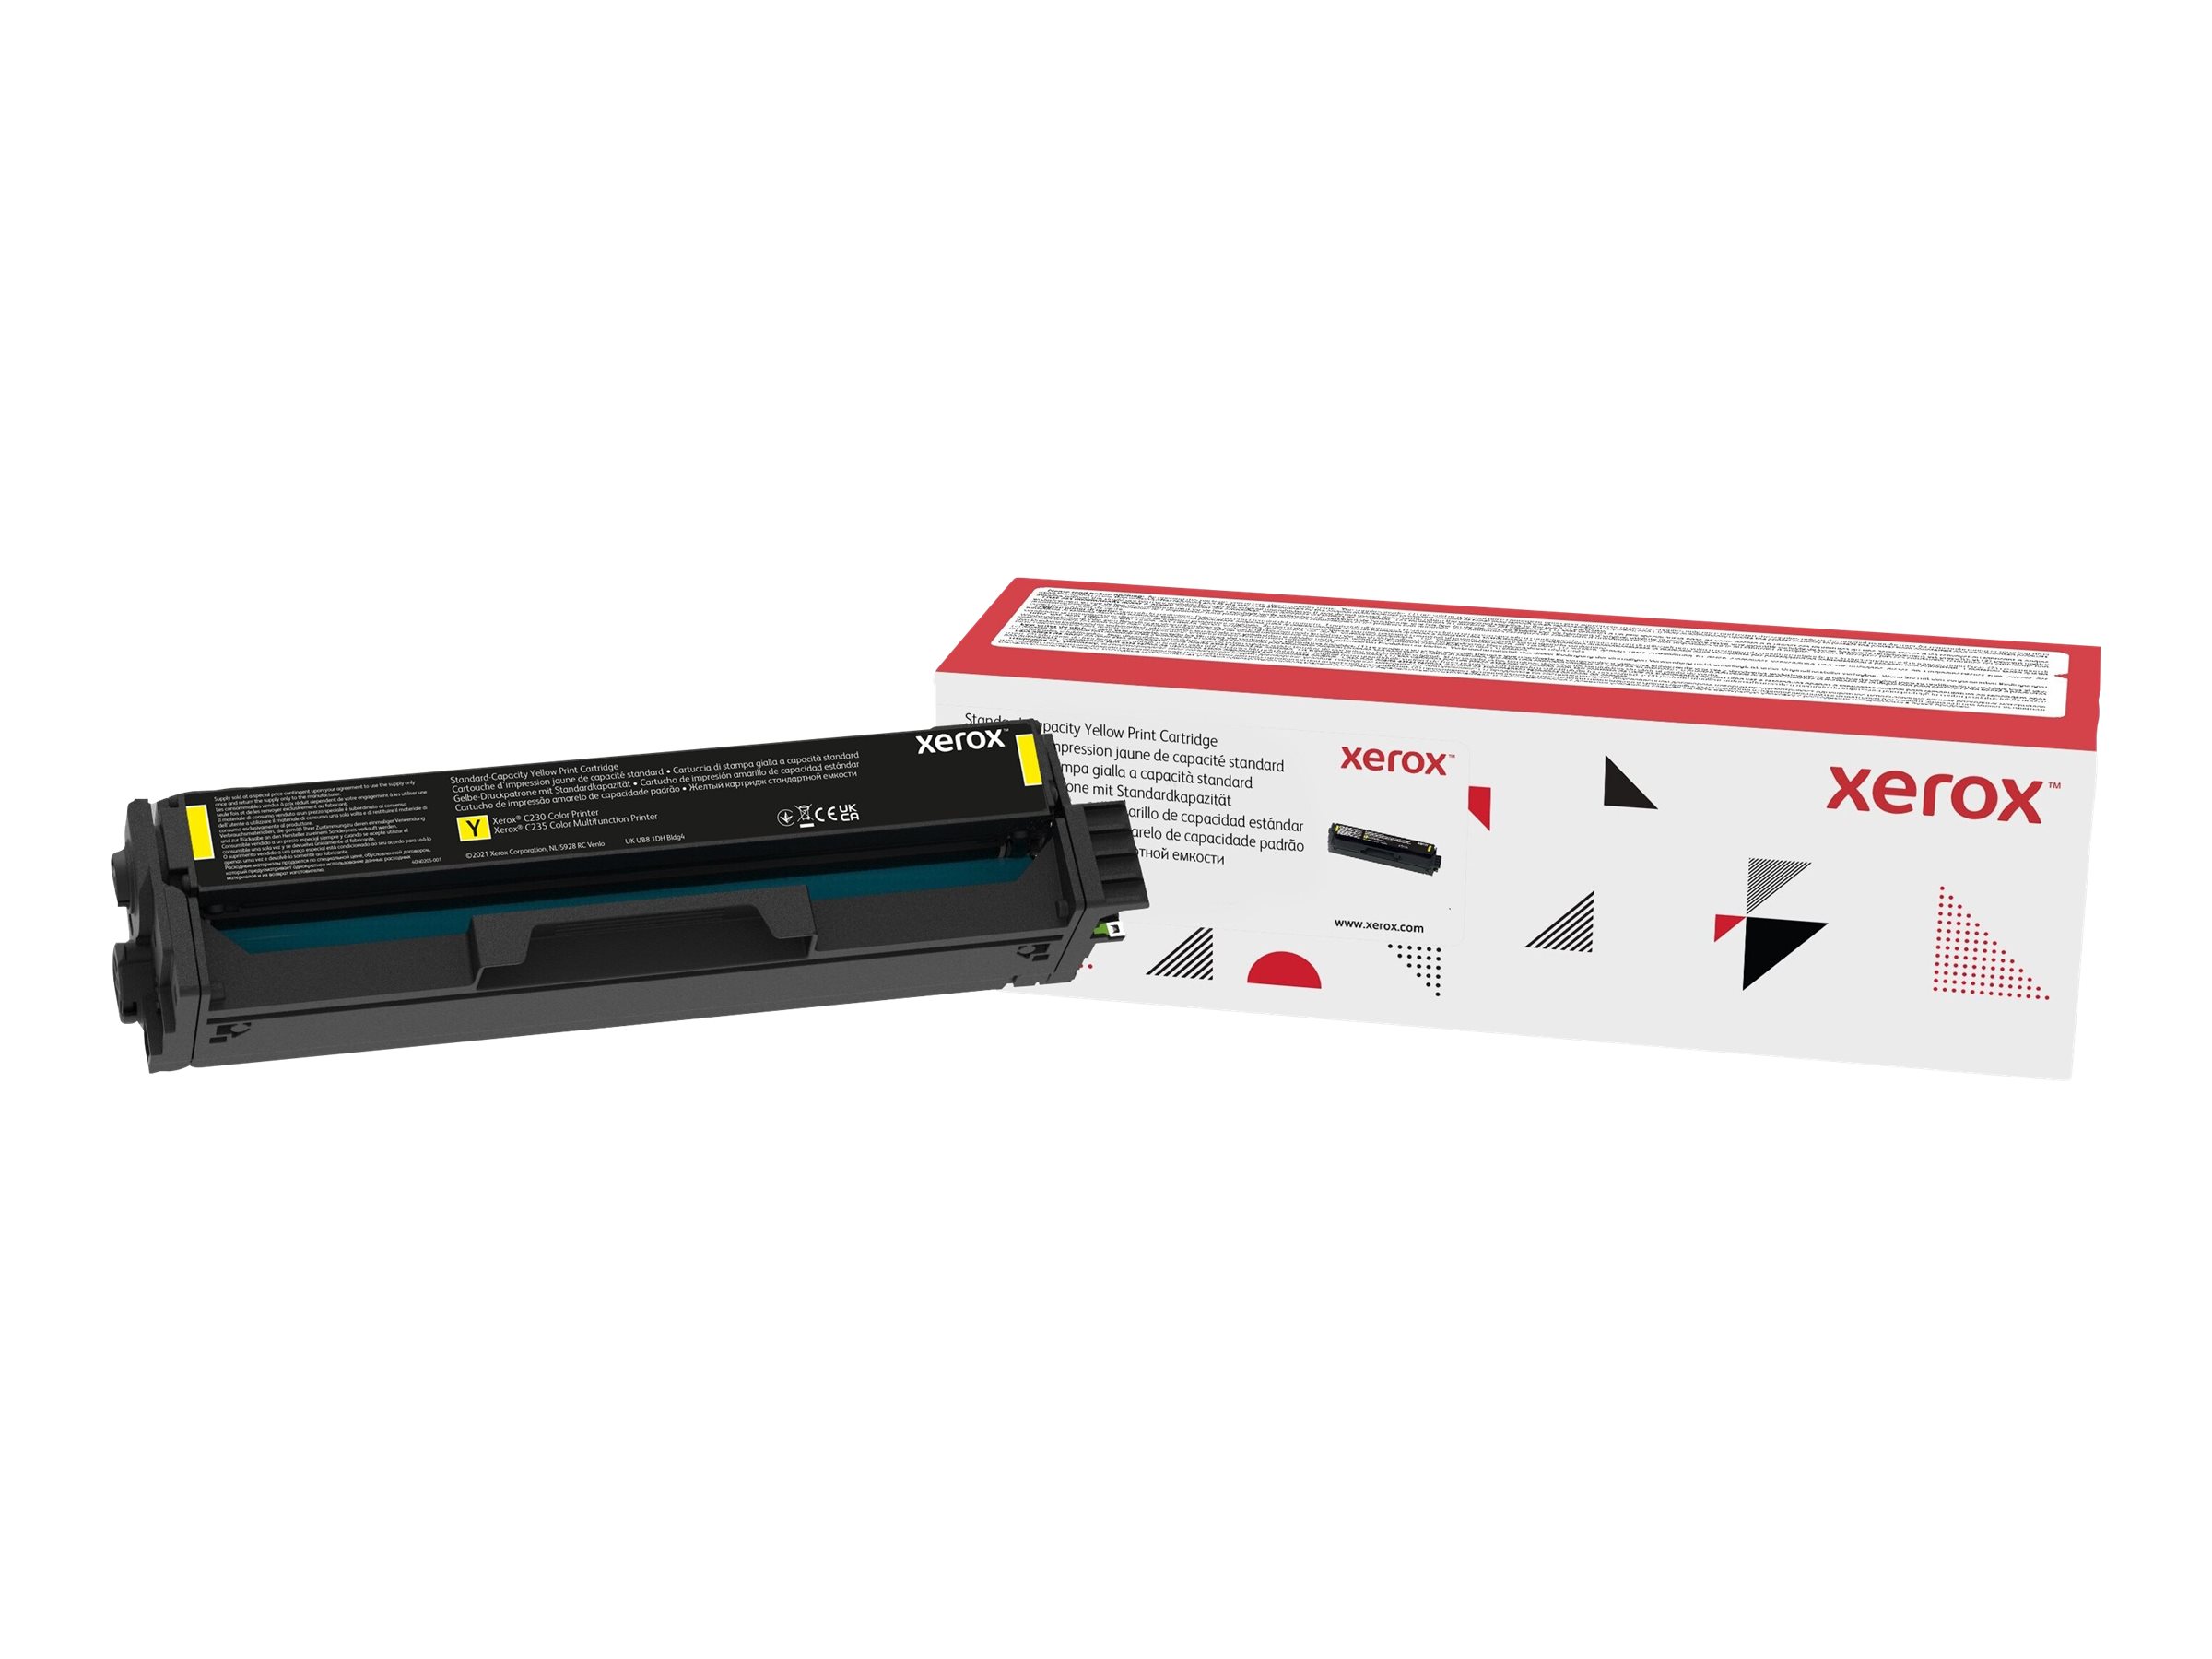 Xerox - Jaune - original - cartouche de toner - pour Xerox C230, C230/DNI, C230V_DNIUK, C235, C235/DNI, C235V_DNIUK - 006R04386 - Autres cartouches de toner